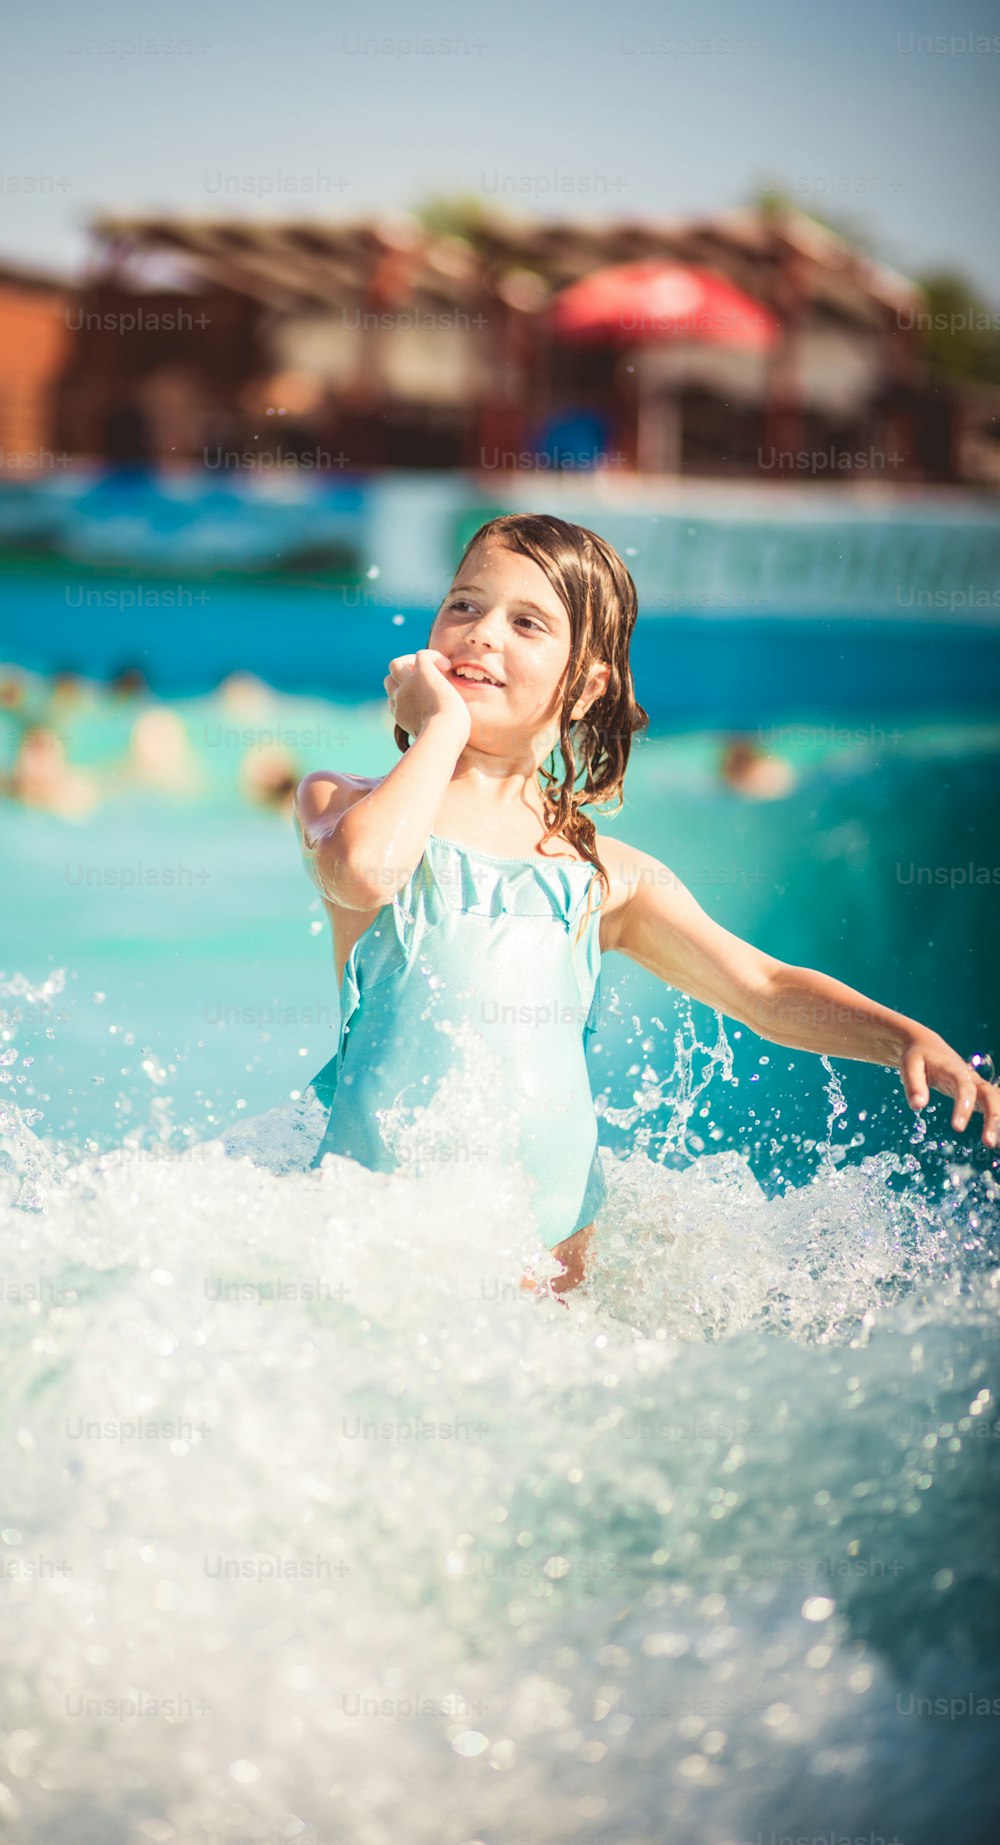 Waves è così divertente. Bambino che si diverte in piscina.